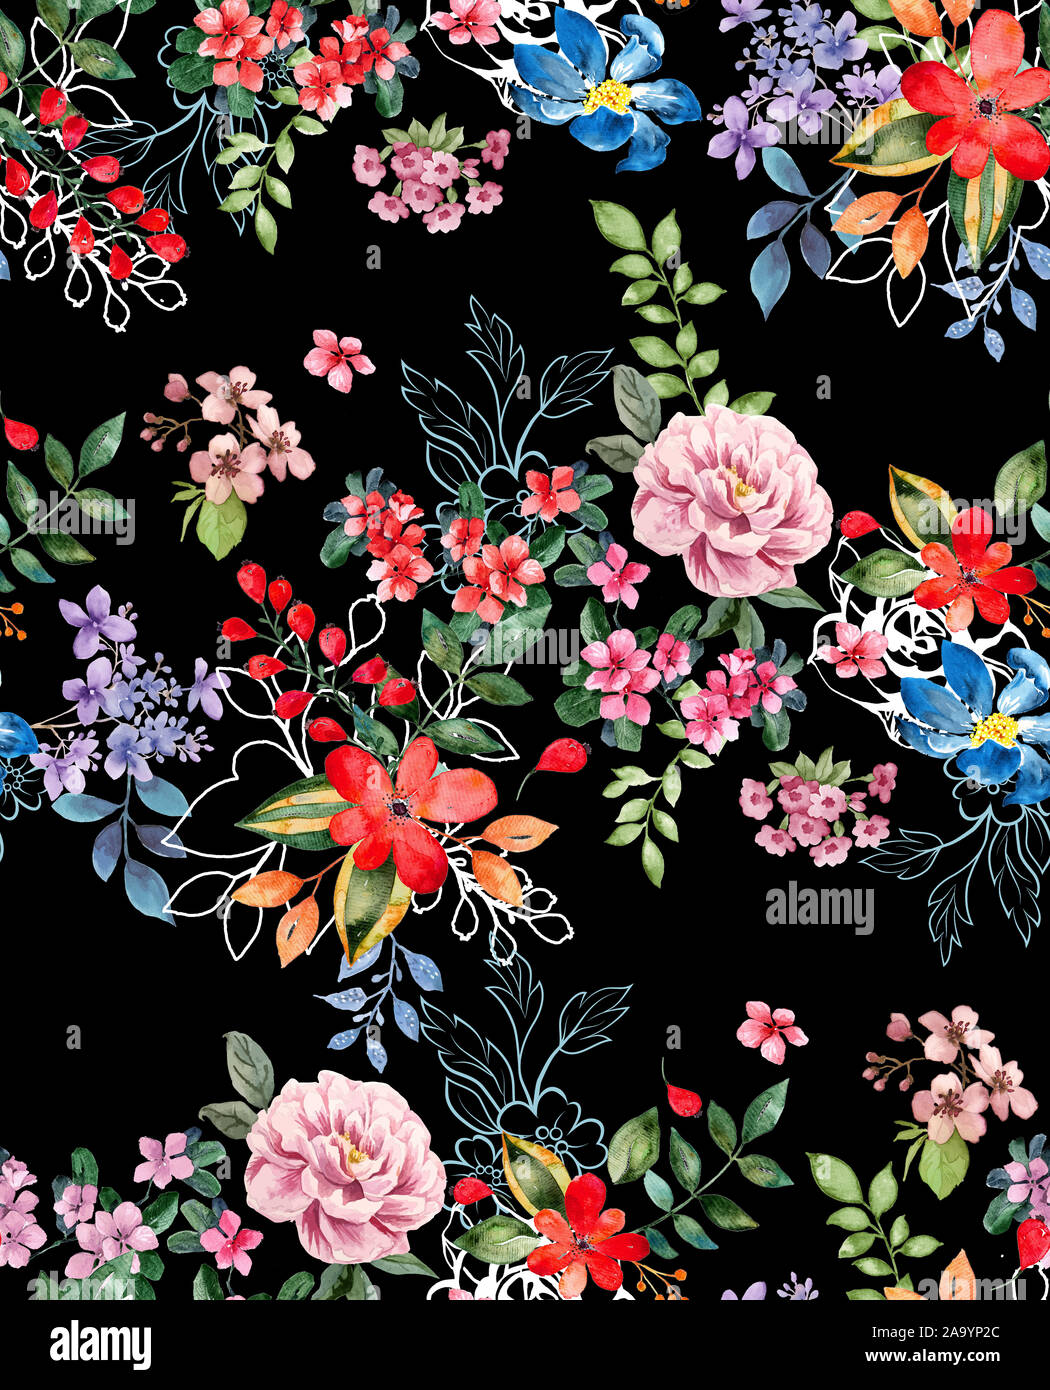 L'aquarelle transparente floral design avec fond noir pour des impressions textiles. Floral background moderne. Banque D'Images